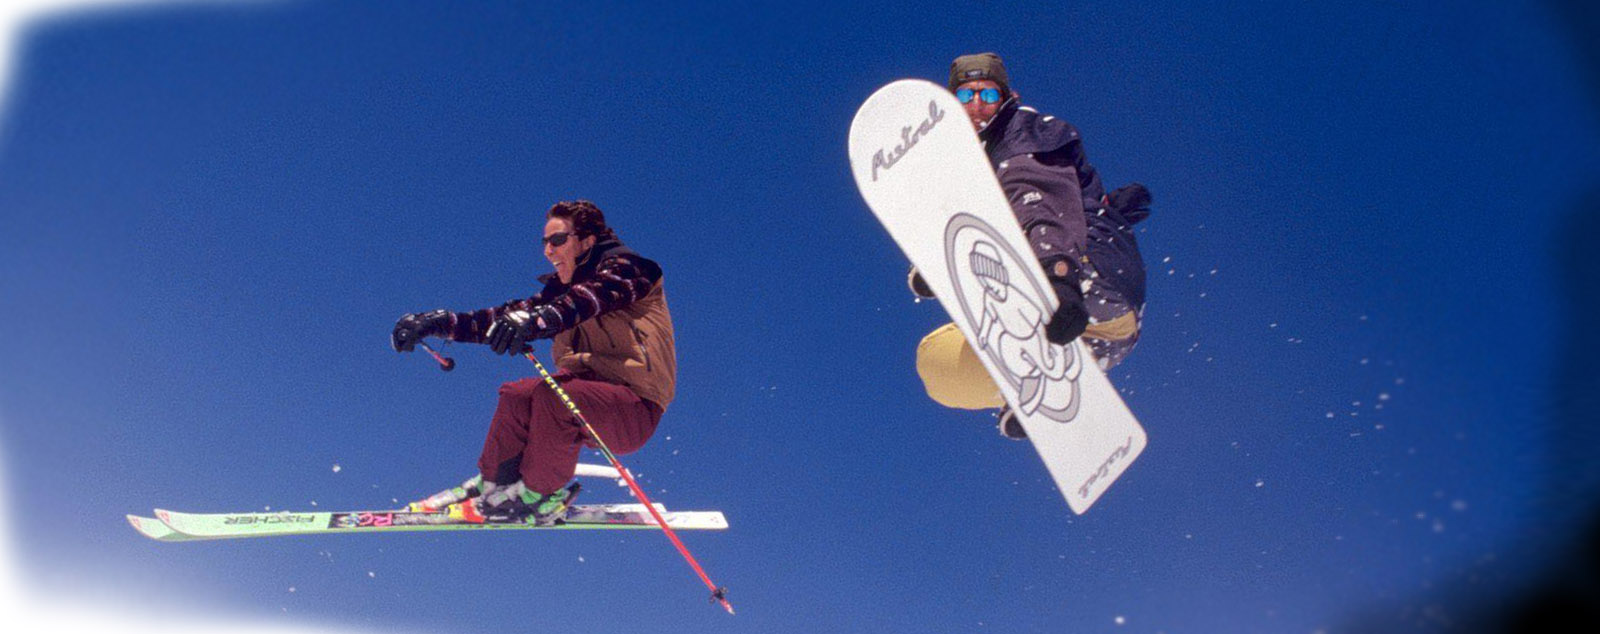 отношения лыжника и сноубордиста